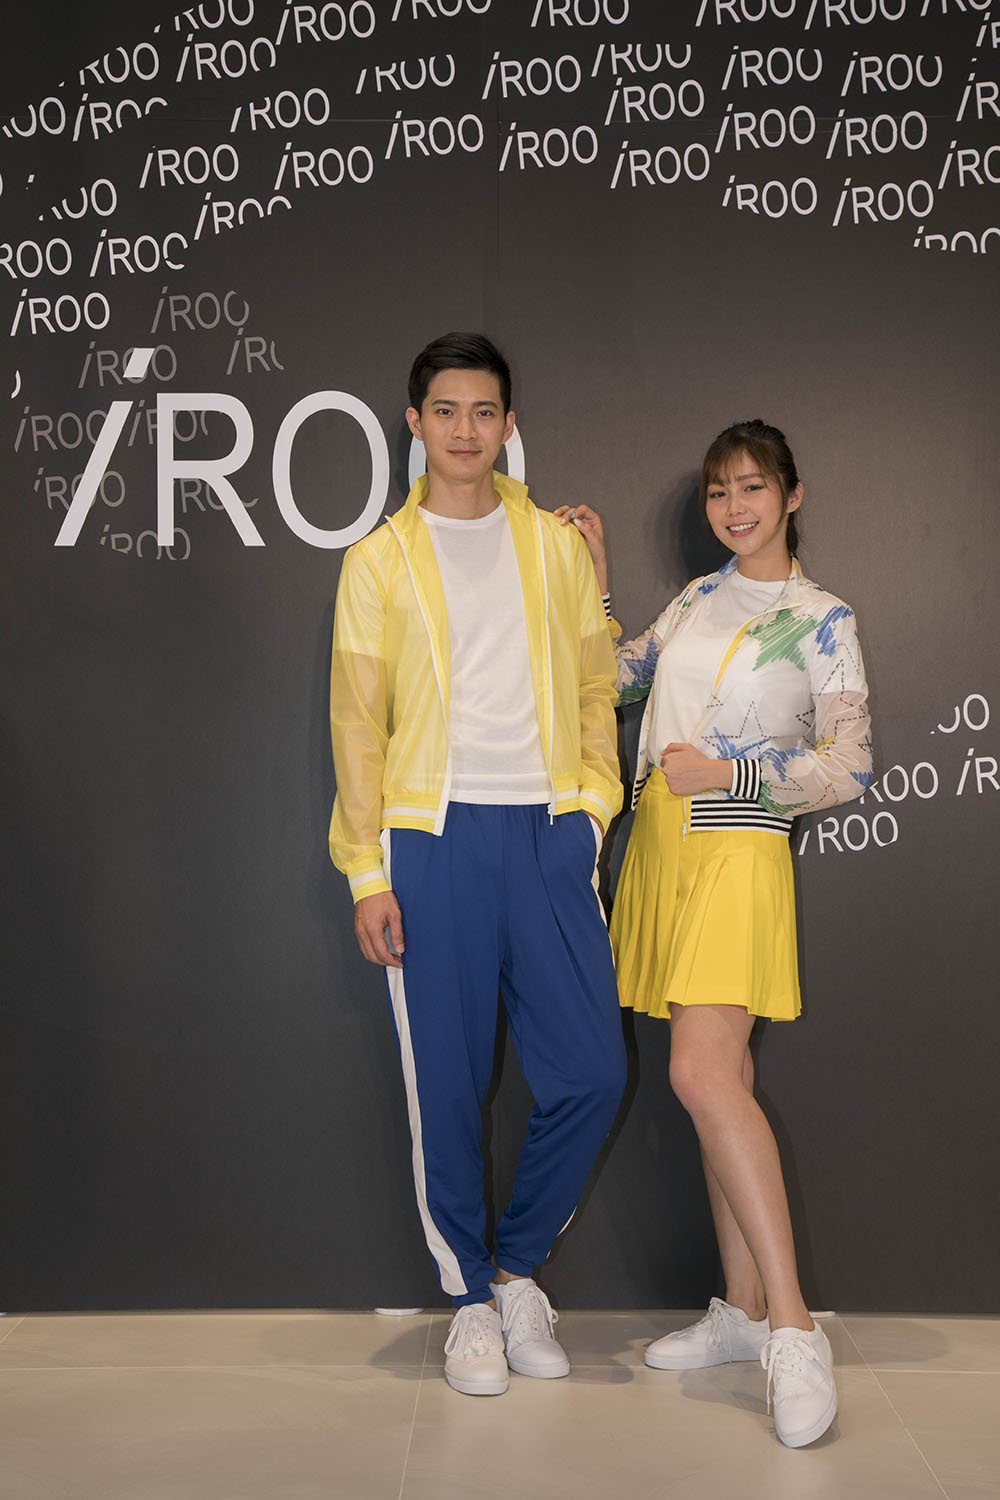 台灣服裝品牌iRoo打造世大運儀典人員服裝舉牌舉旗手.JPG